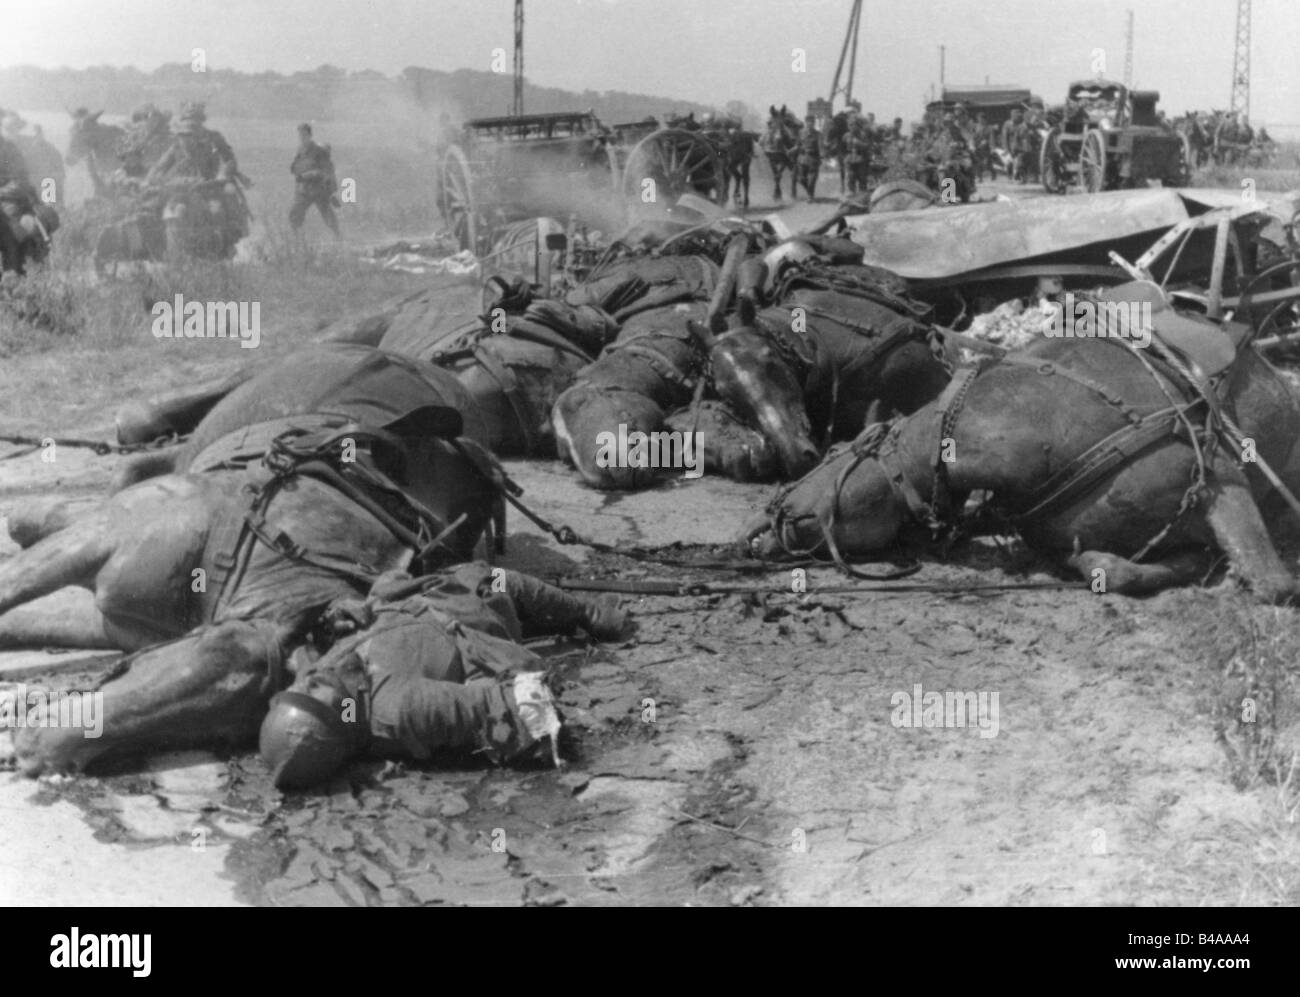 Ereignisse, Zweiter Weltkrieg/zweiter Weltkrieg, Frankreich, französische Artillerie erhielt einen direkten Treffer, Mai/Juni 1940, Stockfoto